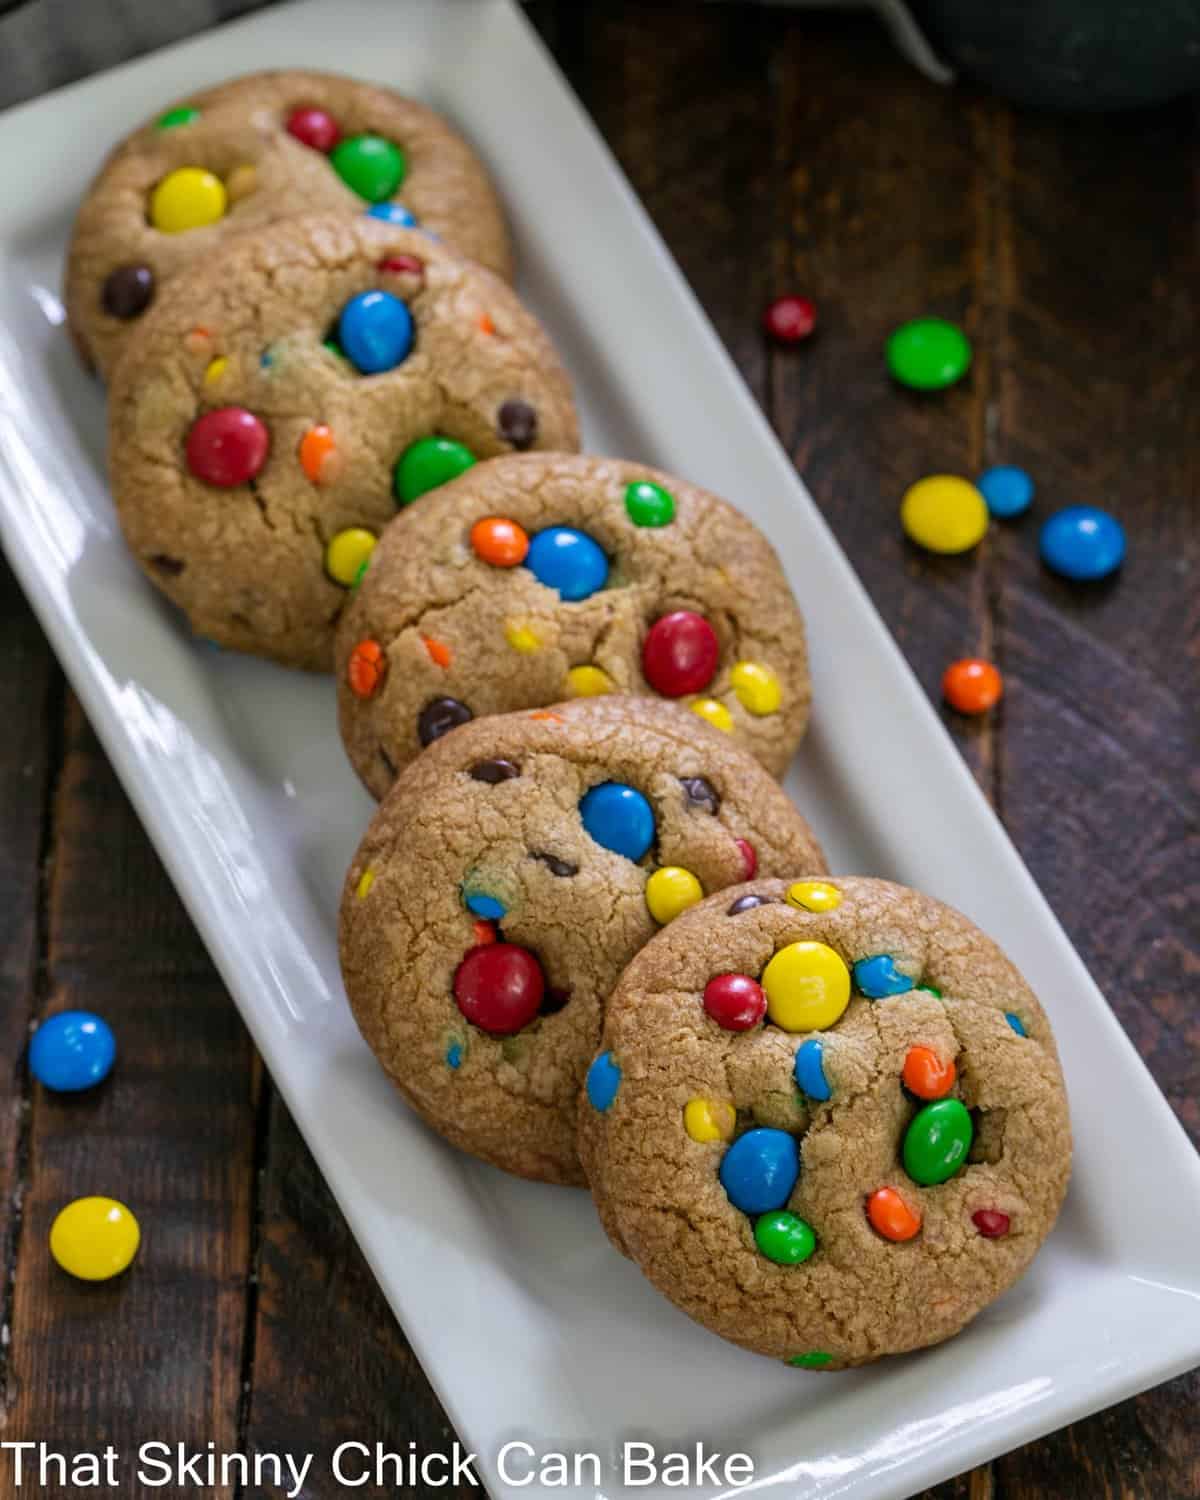 M&M cookie recipe on bag  Original m&m cookie recipe, M&m cookie